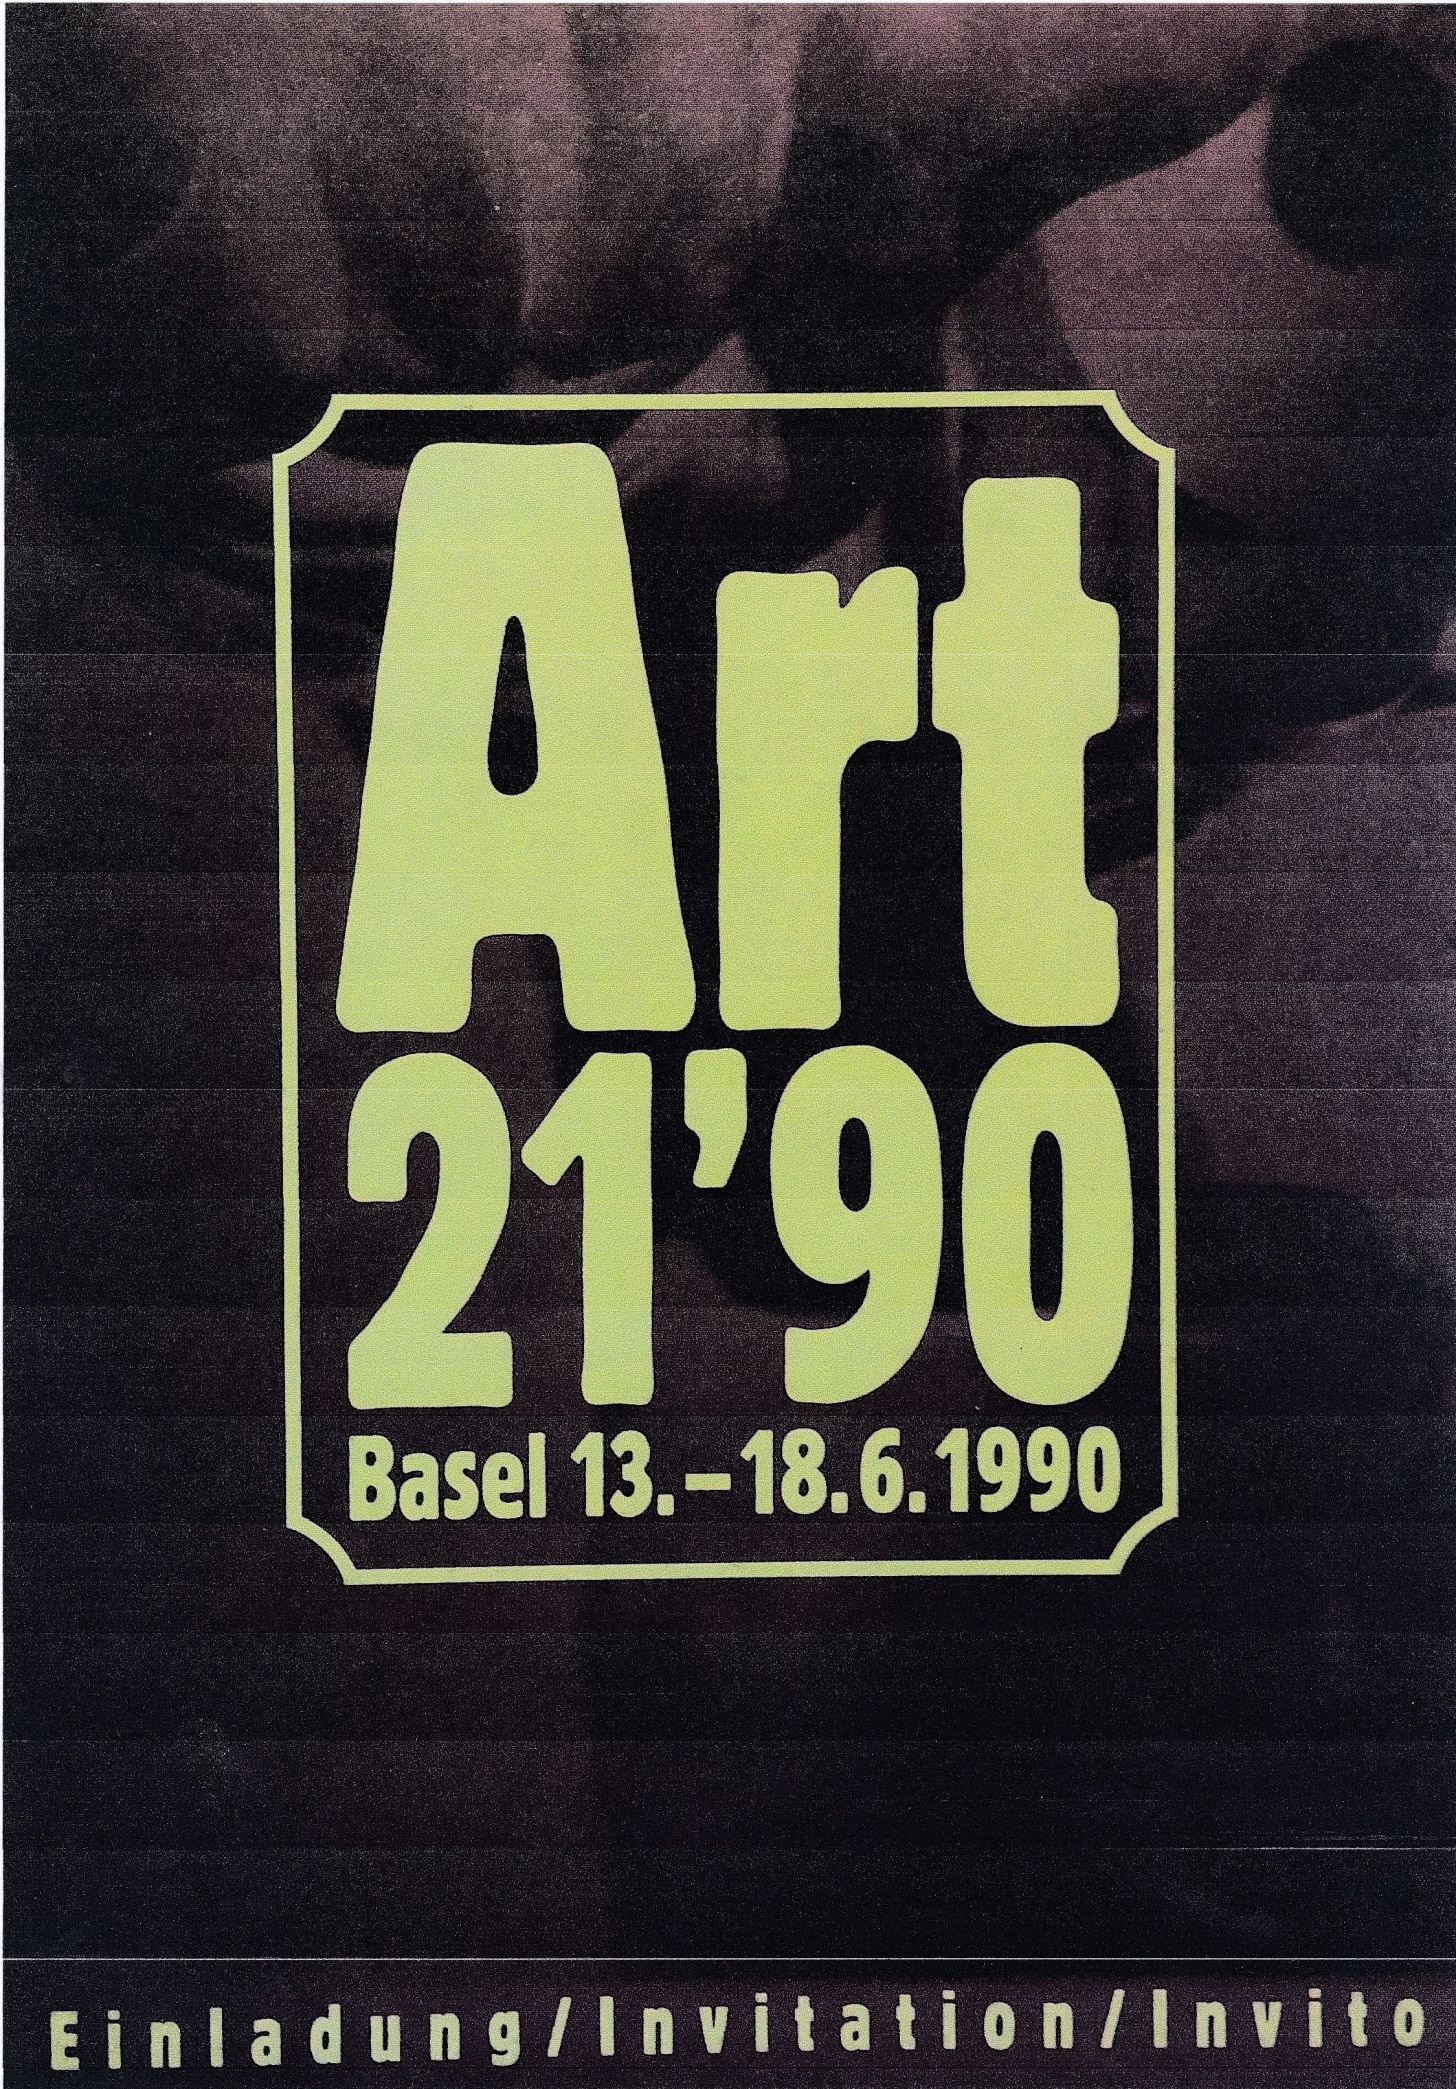 Cartons d’invitation de l’exposition Art 21'90, Foire internationale de Bâle, Espace 212.471-Galerie Graff, Bâle, Suisse, 1990. Recto.